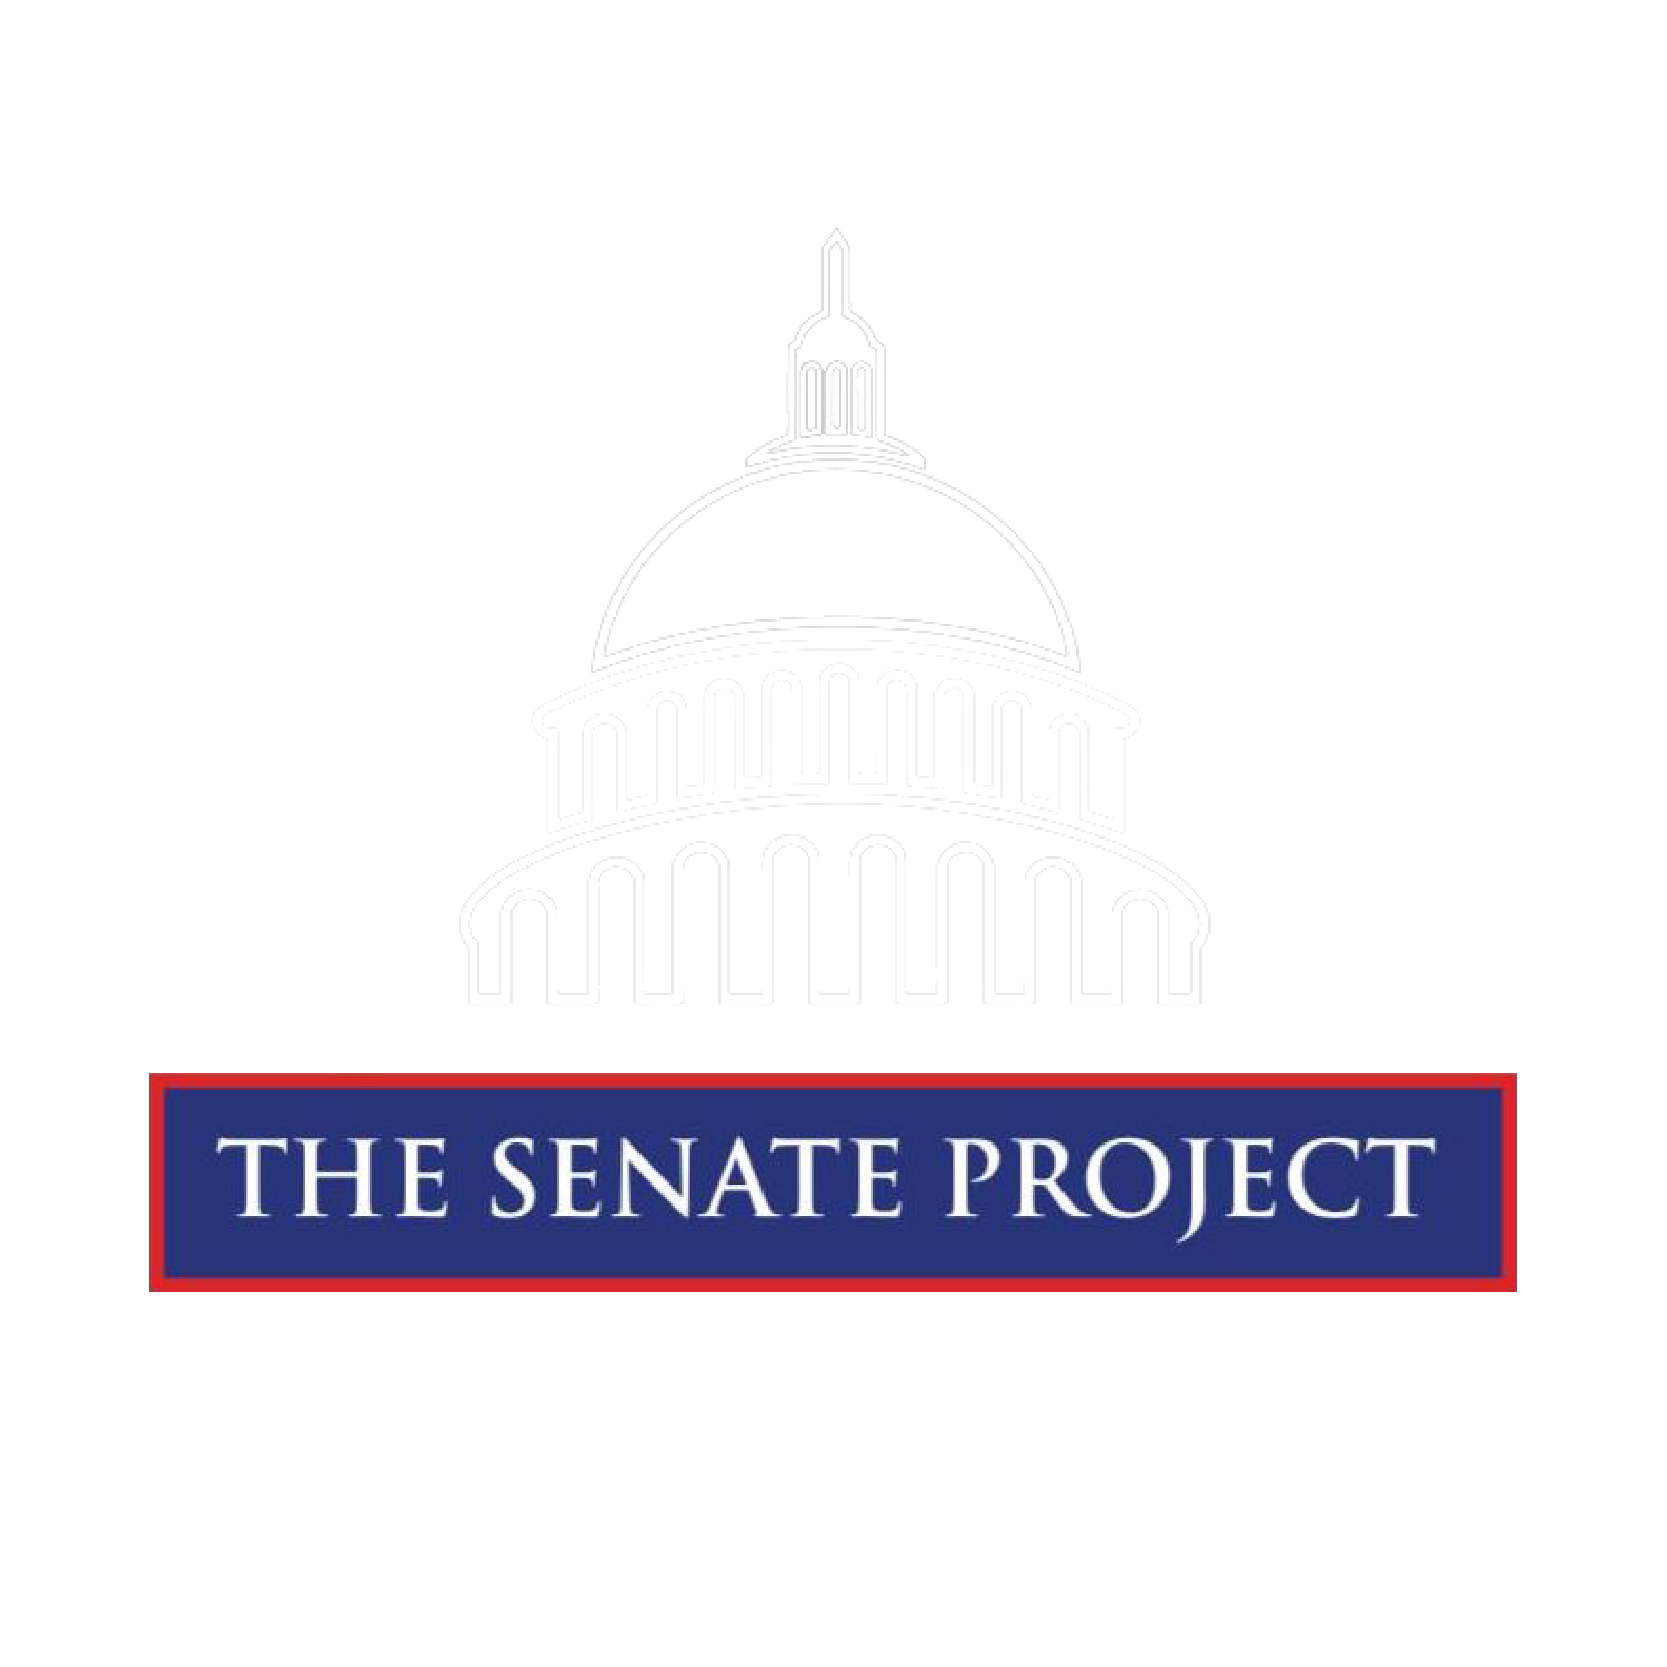 The Senate Project